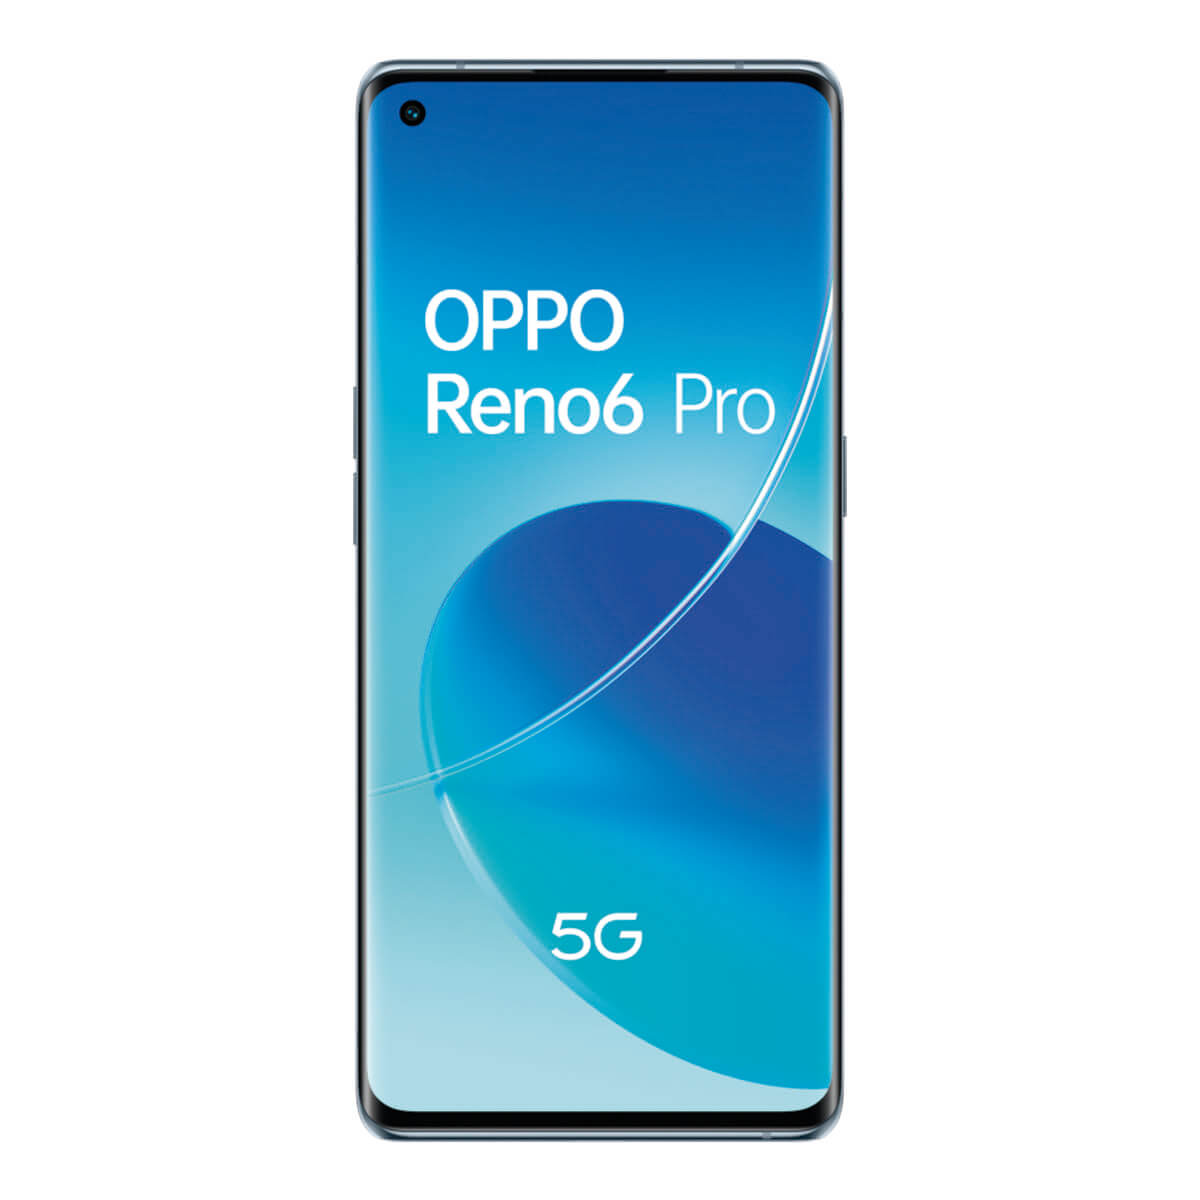 OPPO RENO6 PRO 5G 12GB/256GB GRIS (LUNAR GREY) DUAL SIM CPH2247 | Móviles libres